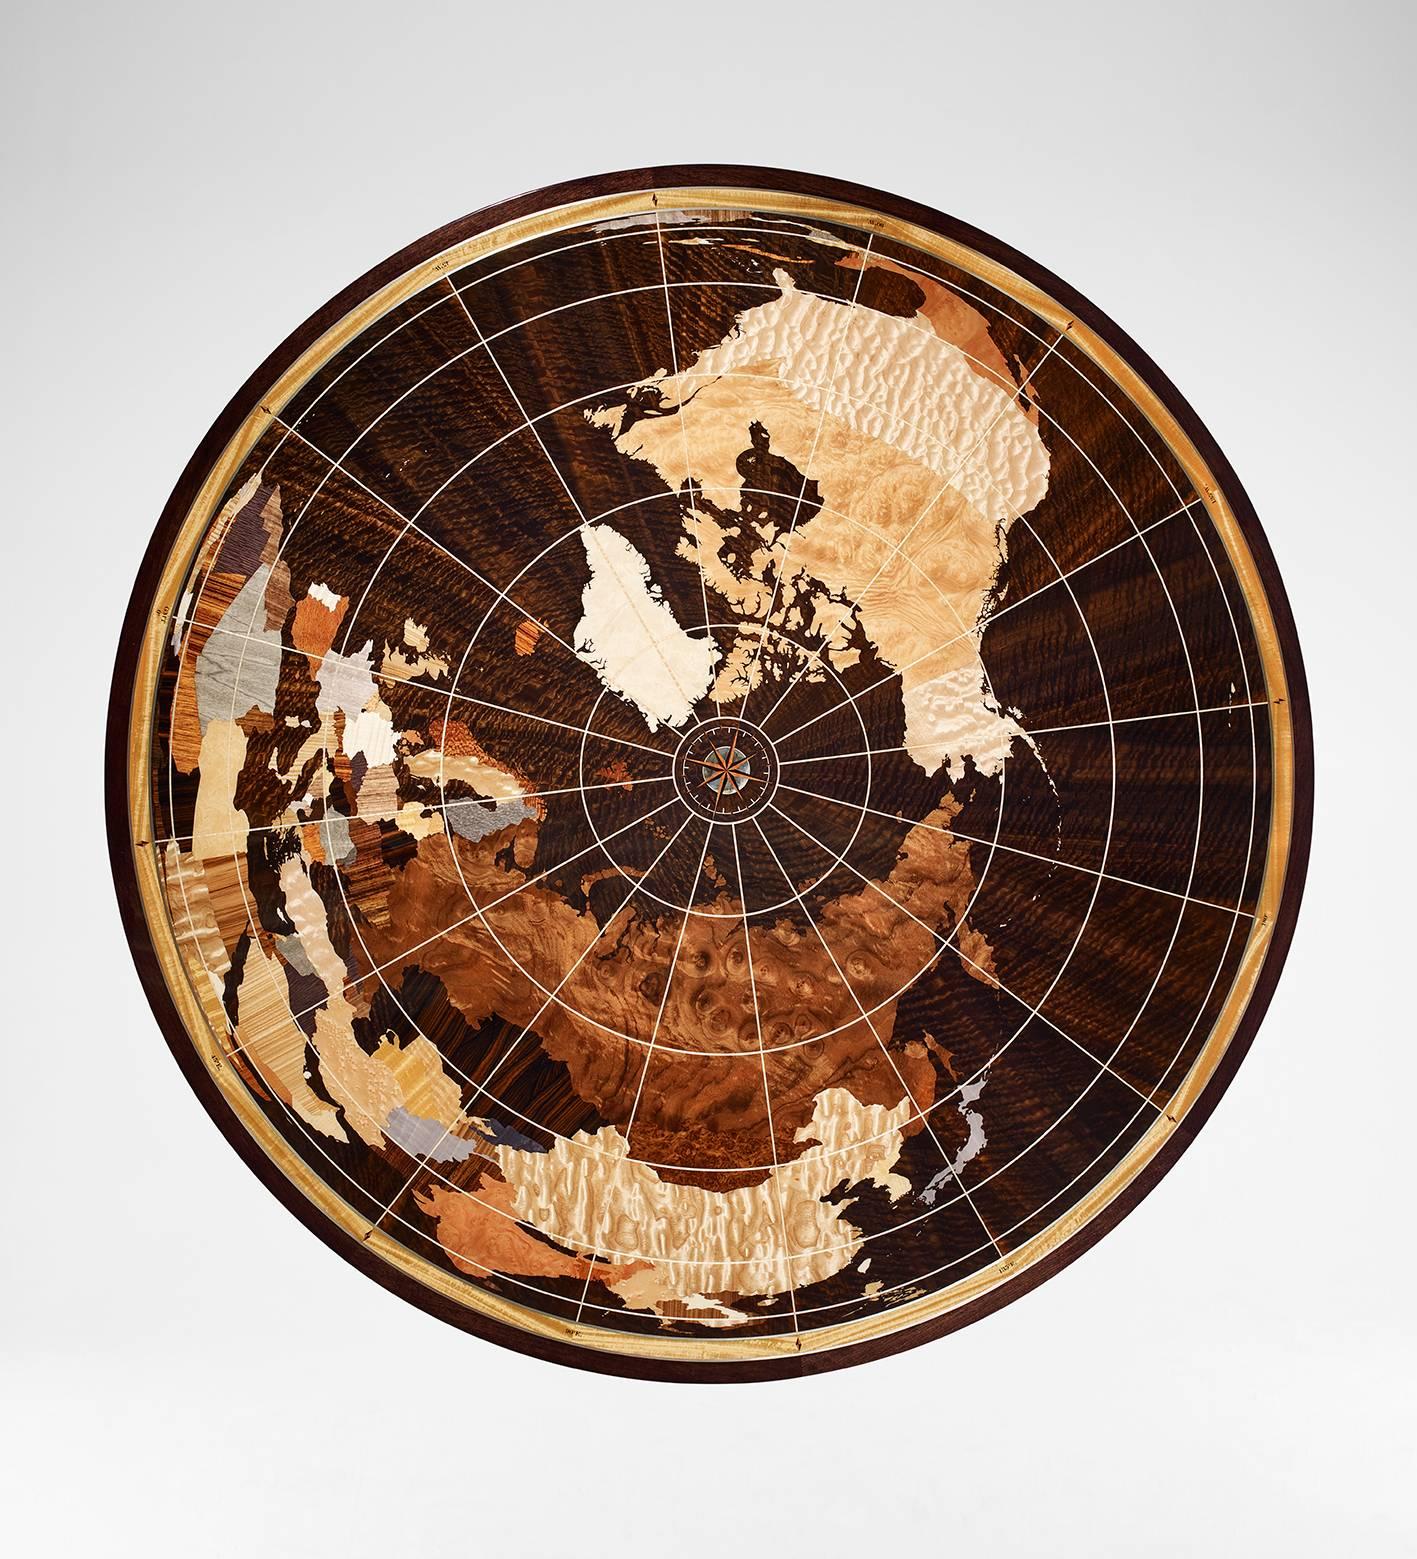 Der einzigartige Linley World Map Tisch wird von unseren spezialisierten Handwerkern in Großbritannien aus über 40 individuell ausgewählten Furnieren handgefertigt.
Der Korpus des Tisches ist aus gebeiztem Fulbeck-Nussbaum in Hochglanzoptik